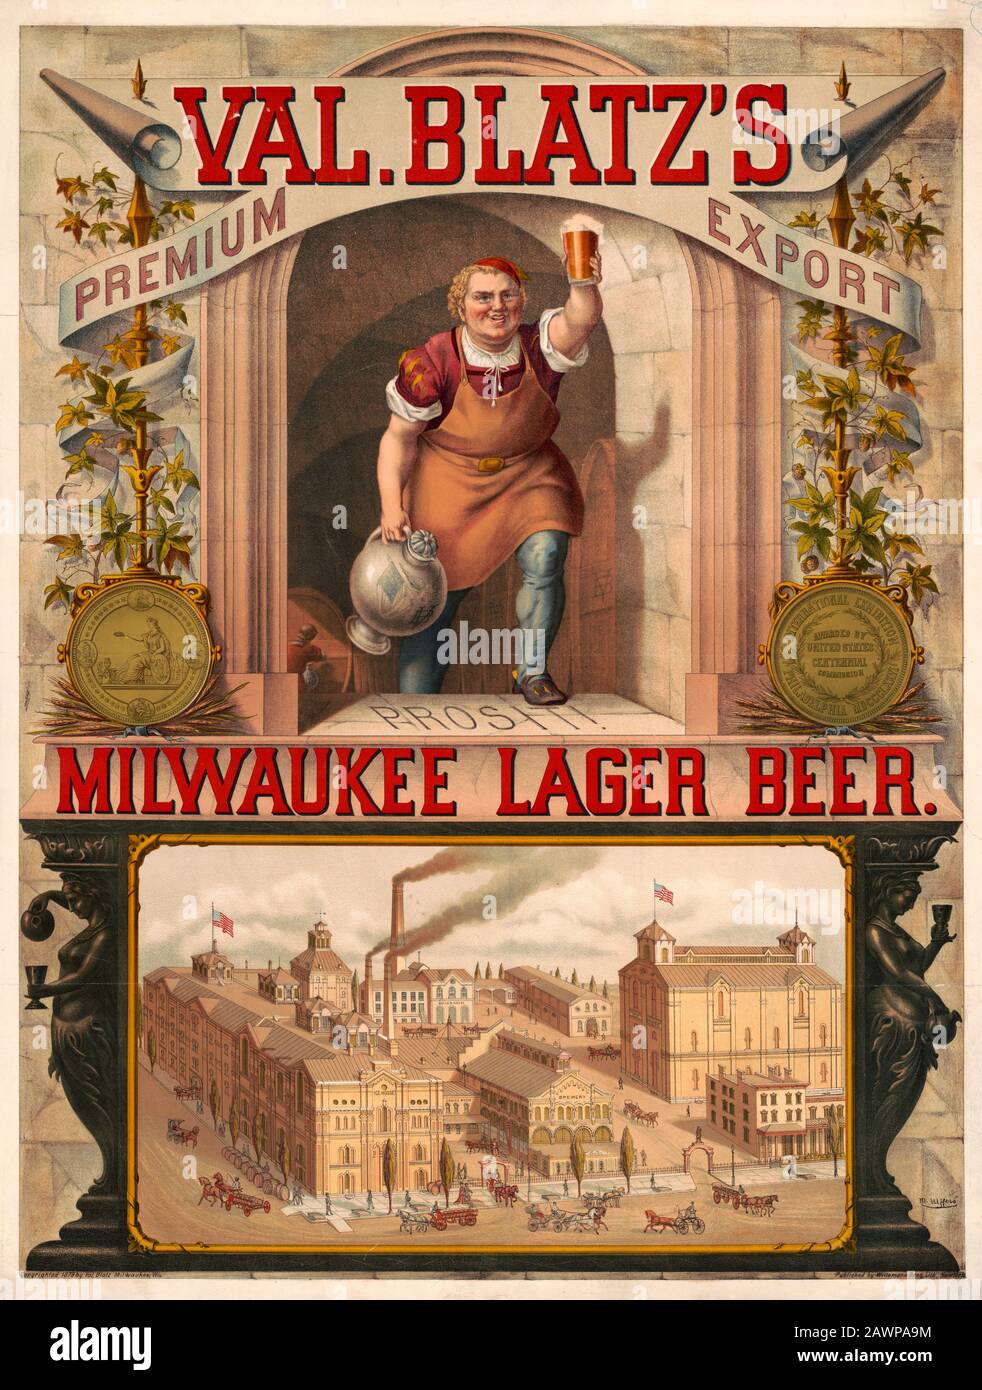 Val. Blatz's Premium export, Milwaukee lager beer / M. Ulffers. Impression de la publicité pour Val. Blatz's Milwaukee Lager Beer montrant un brasseur qui lève un verre de bière, et une vue panoramique sur la brasserie. Juillet 1879 Banque D'Images